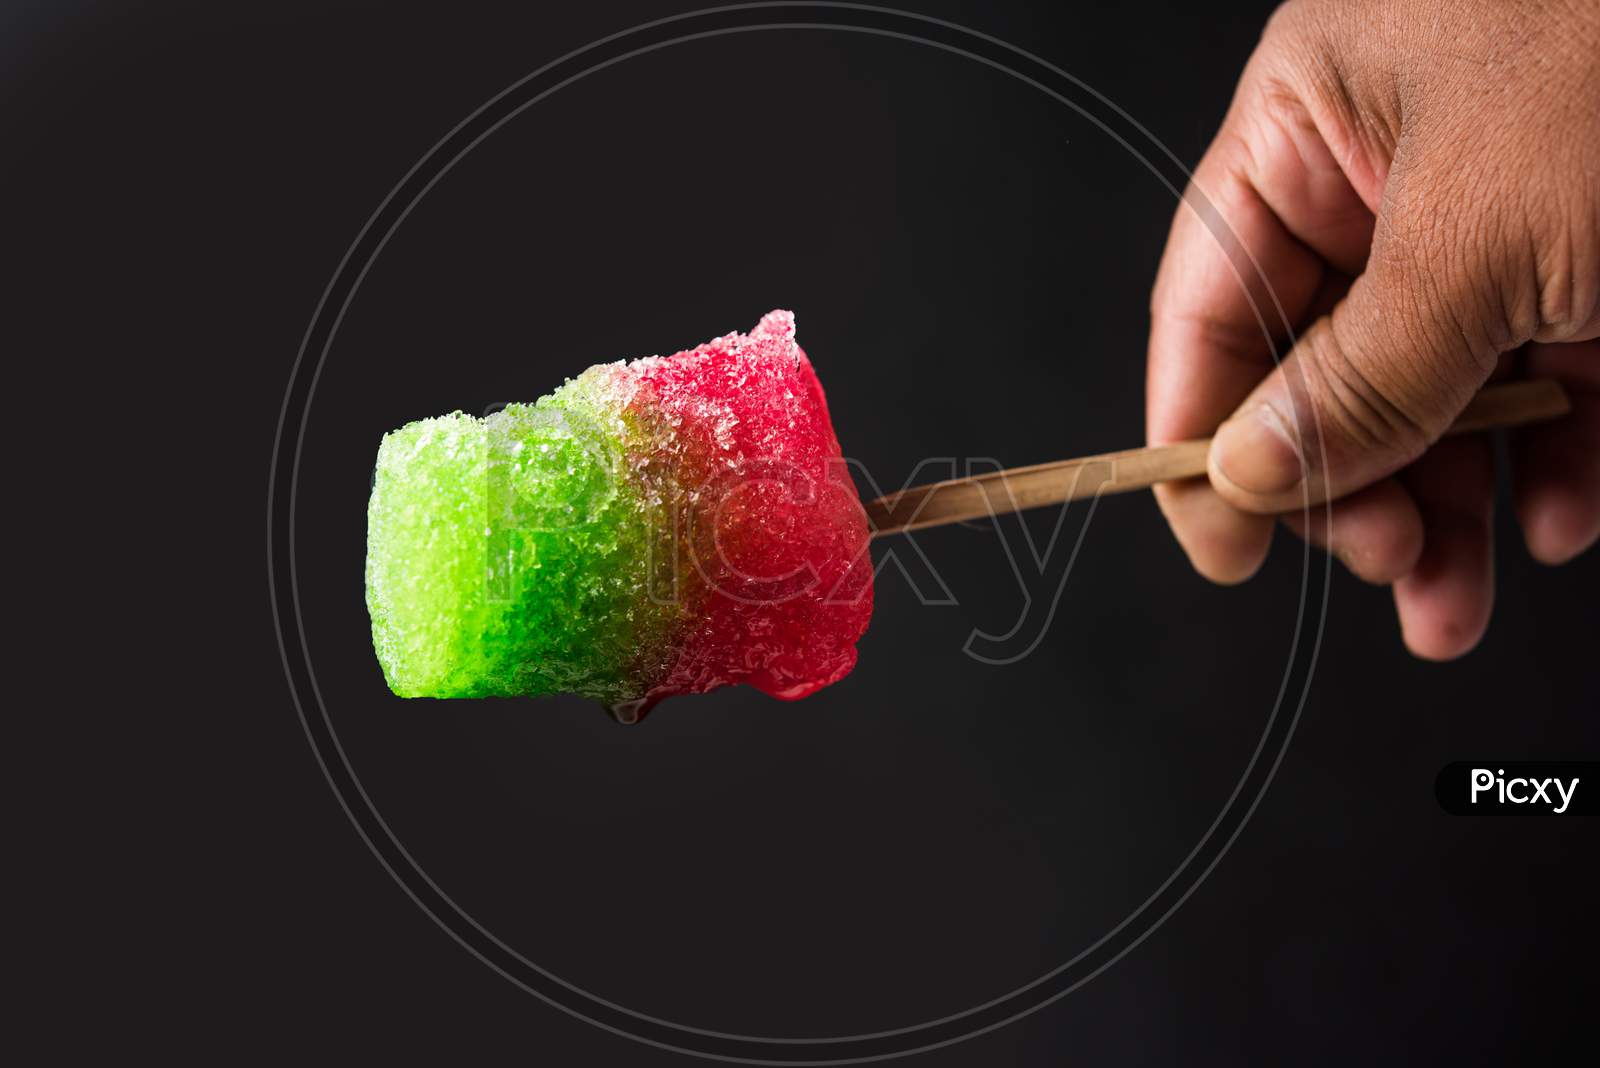 Chuski / Baraf ka Gola / Ice candy